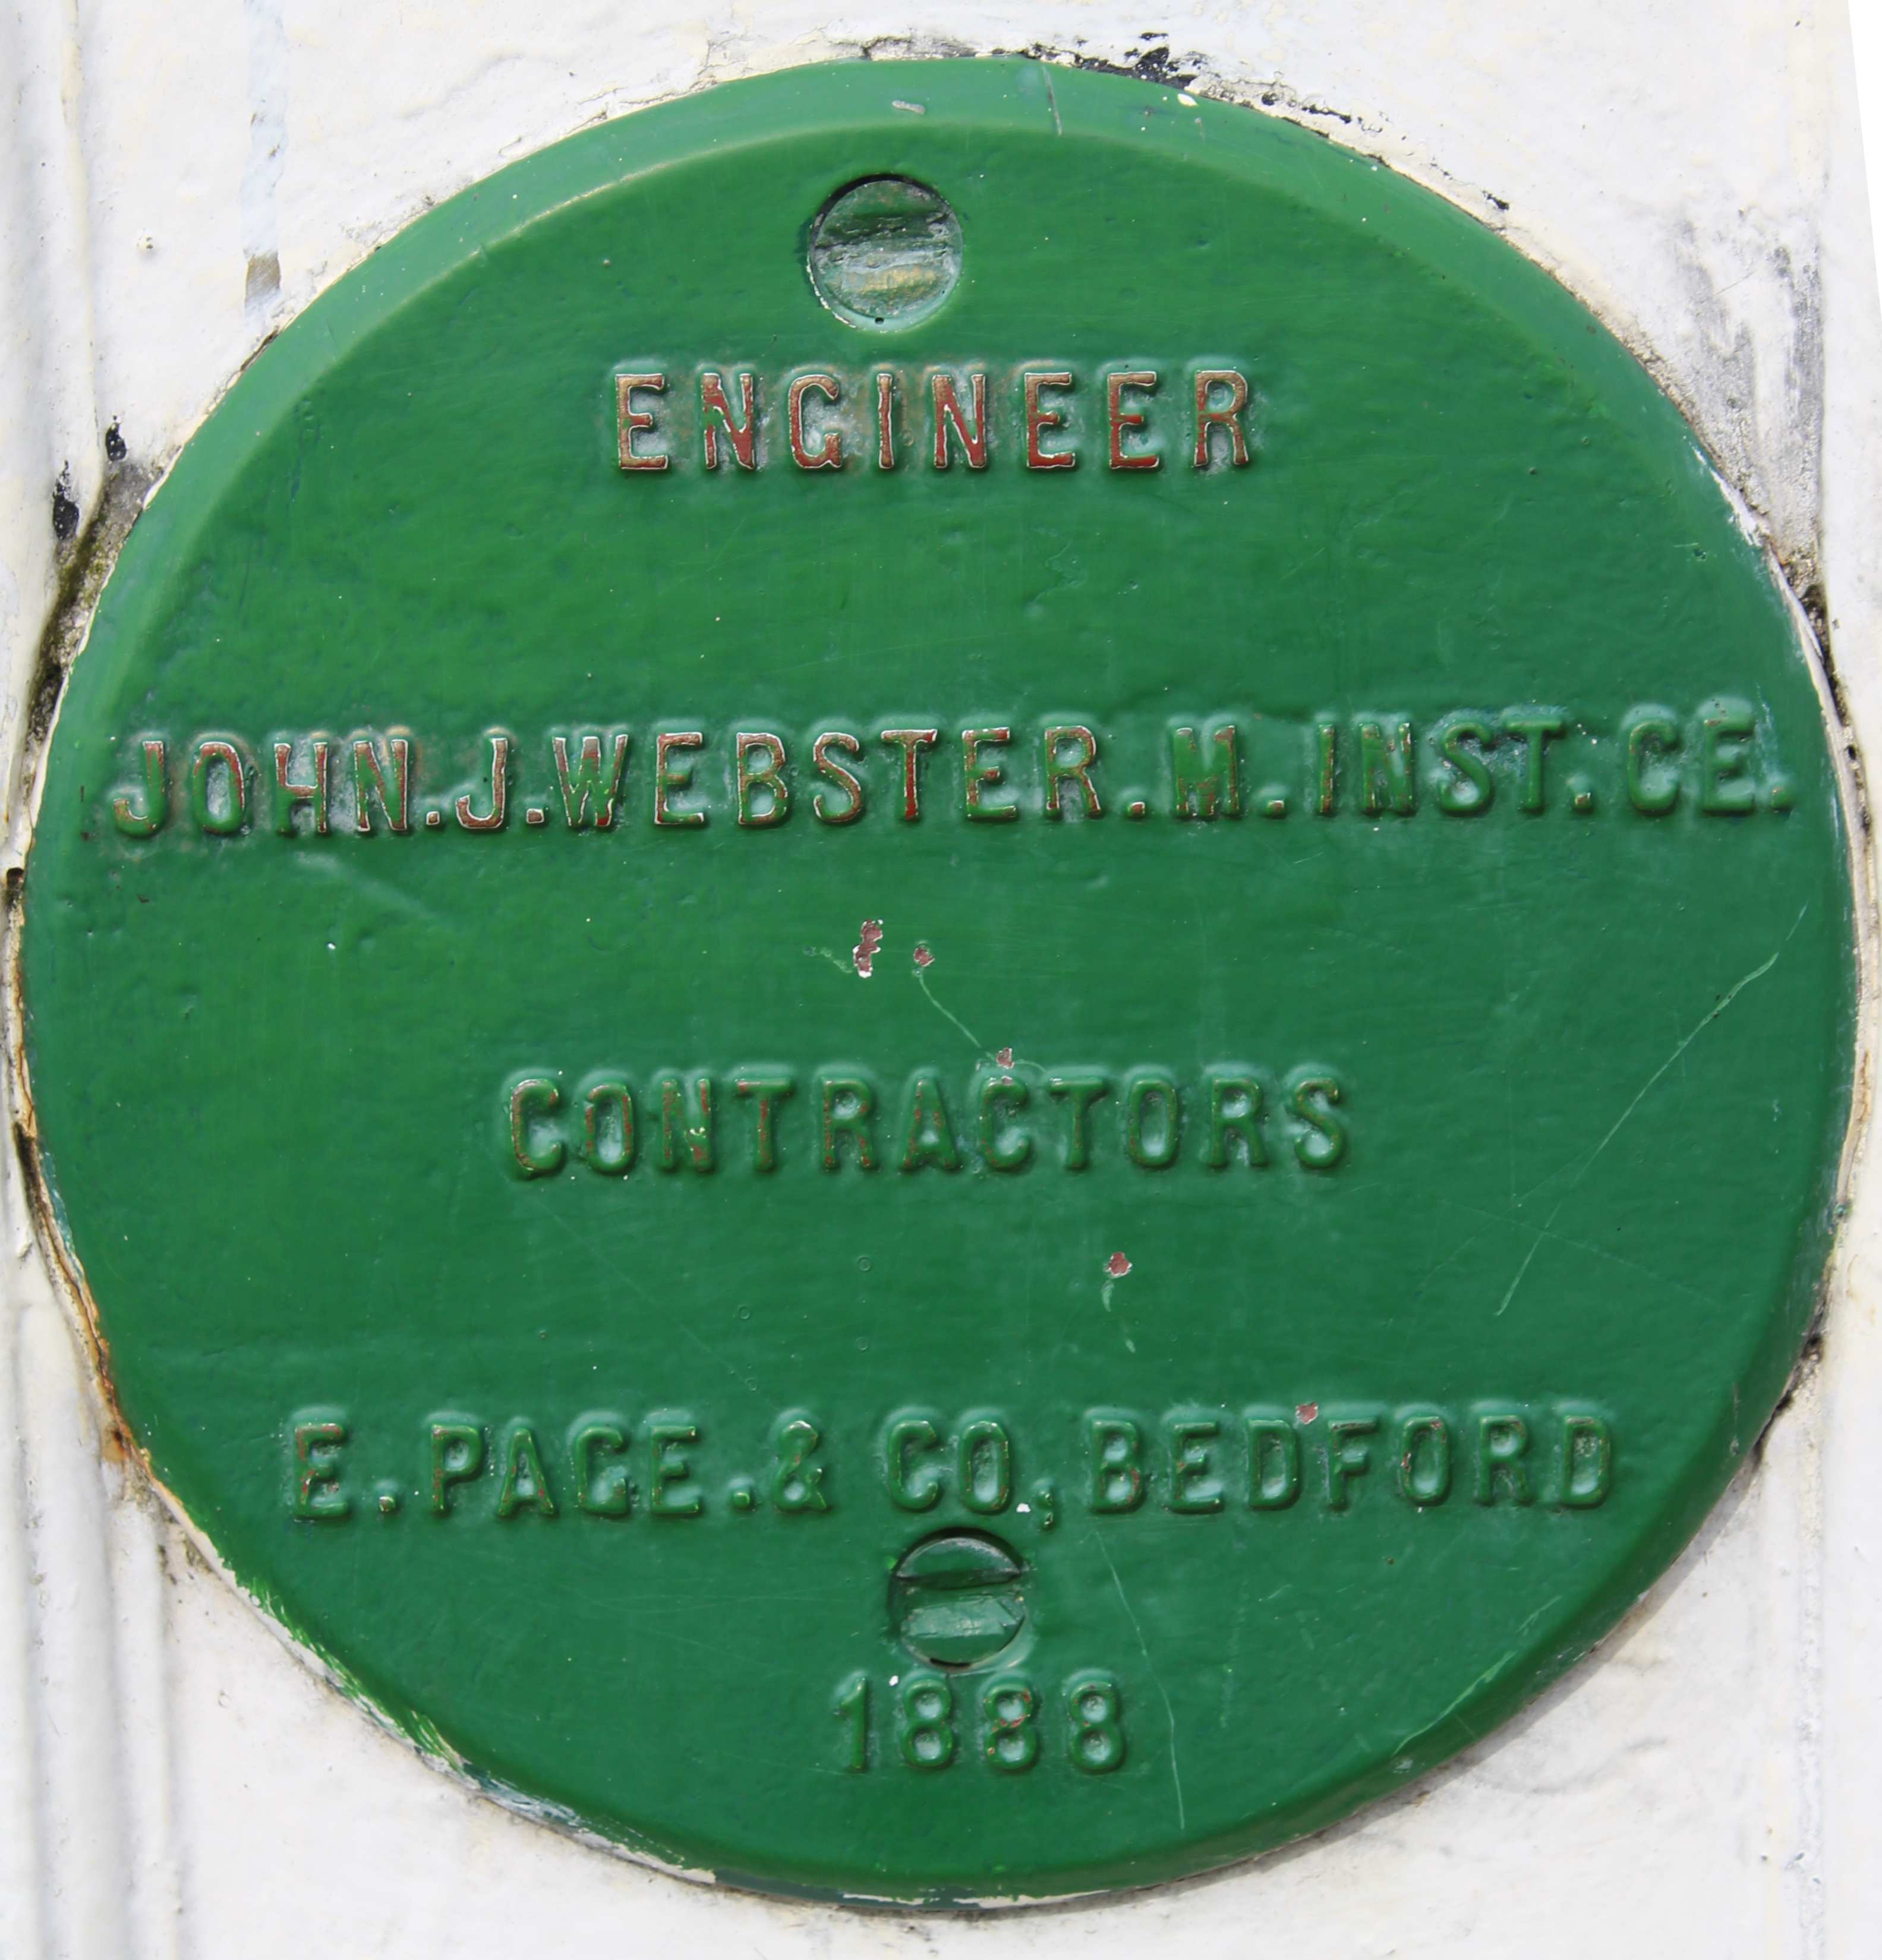 Suspension Bridge opening engineers commemorative plaque